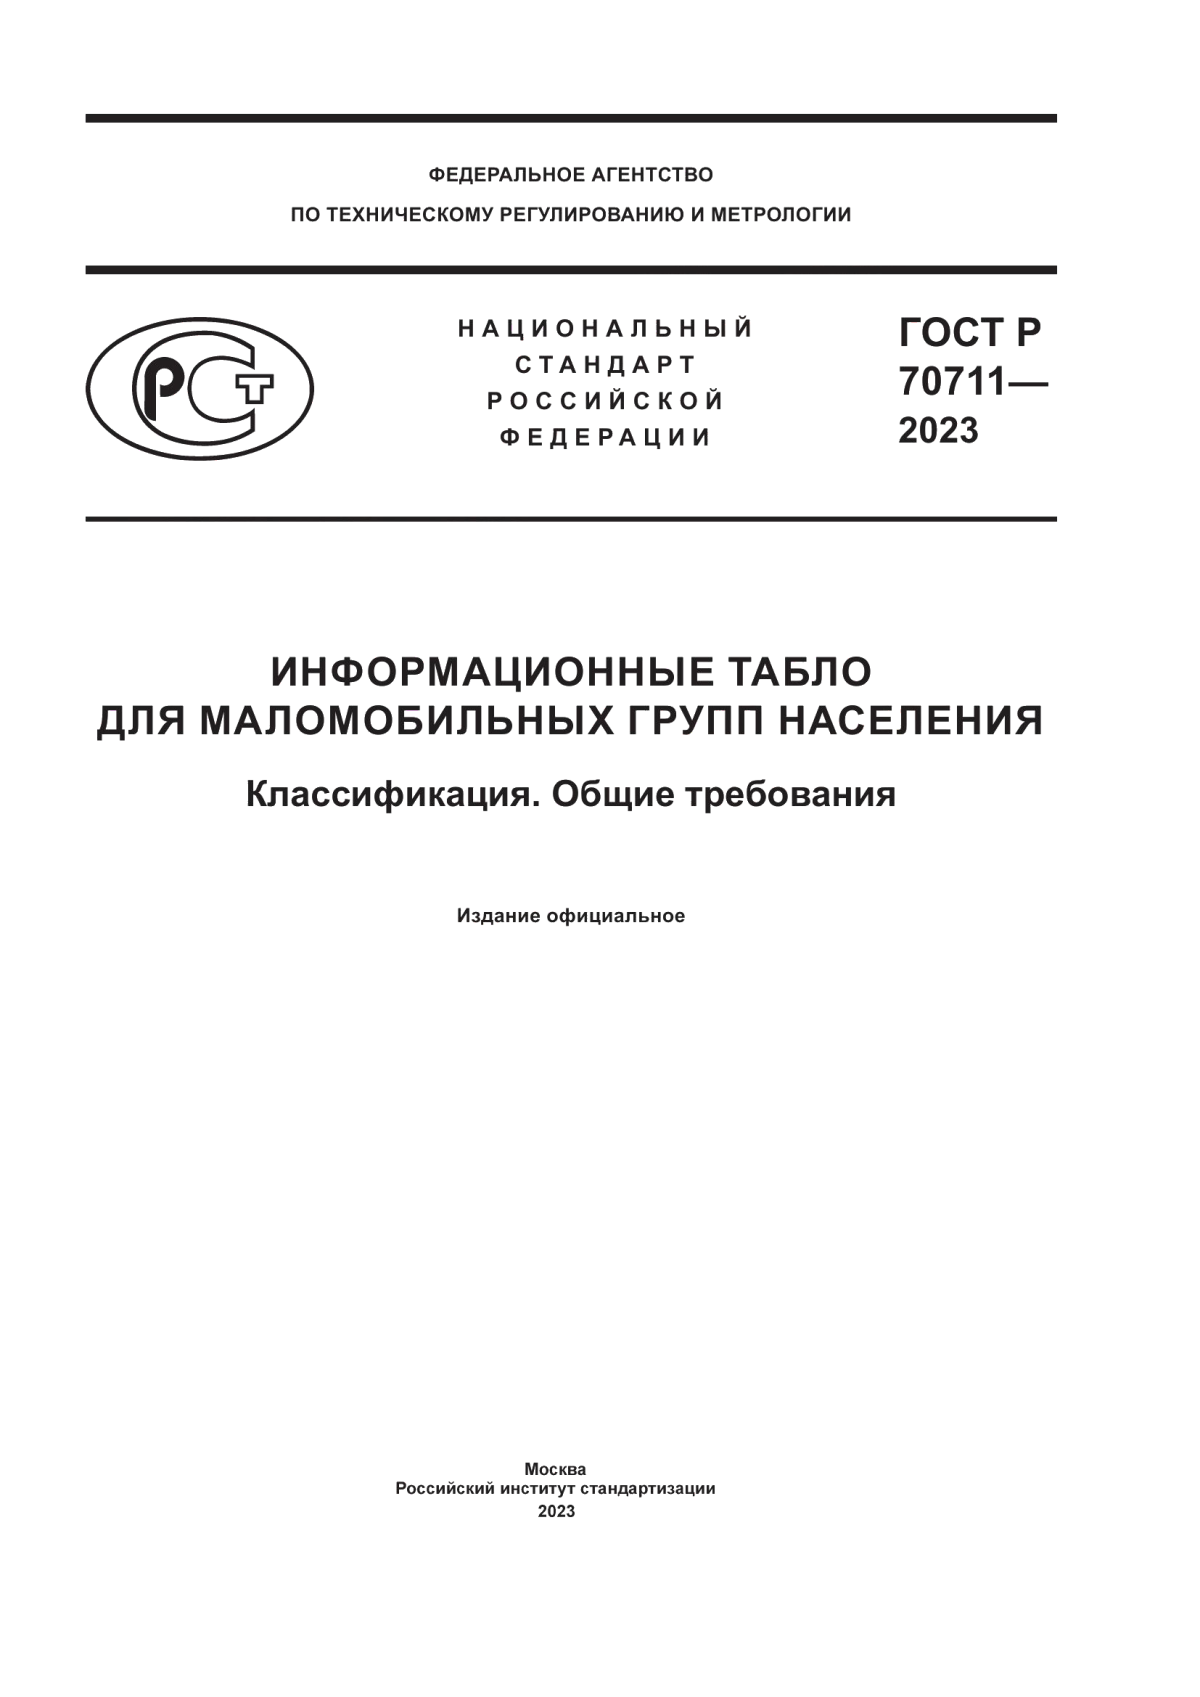 ГОСТ Р 70711-2023 Информационные табло для маломобильных групп населения. Классификация. Общие требования